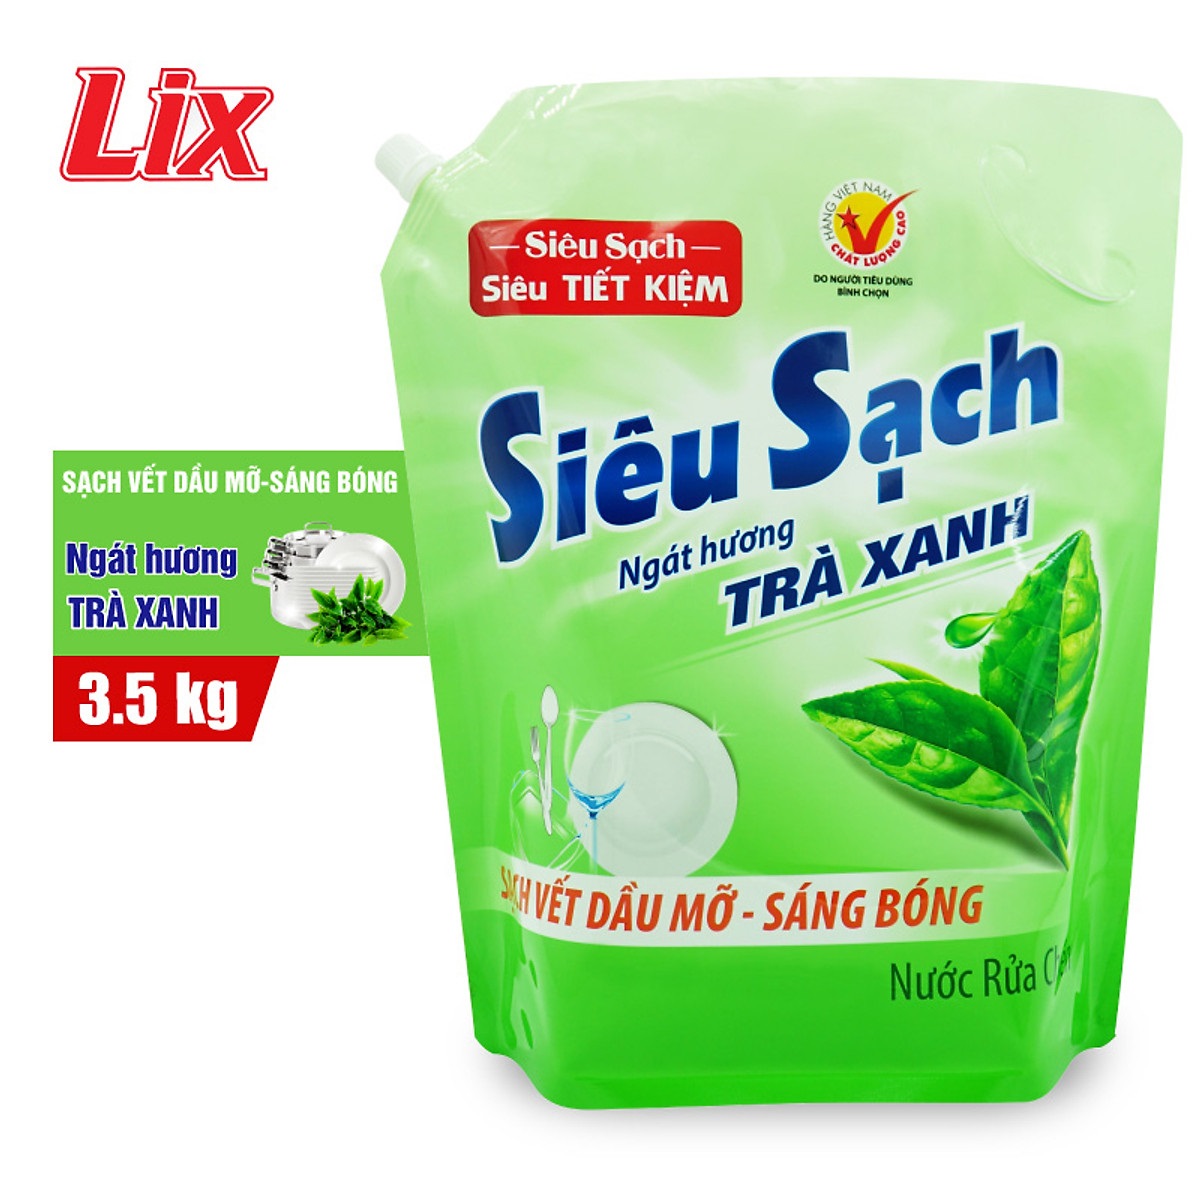 Nước rửa chén LIX 3.5KG siêu sạch hương trà xanh loại túi N8101 sạch bóng vết bẩn dầu mỡ không hại da tay